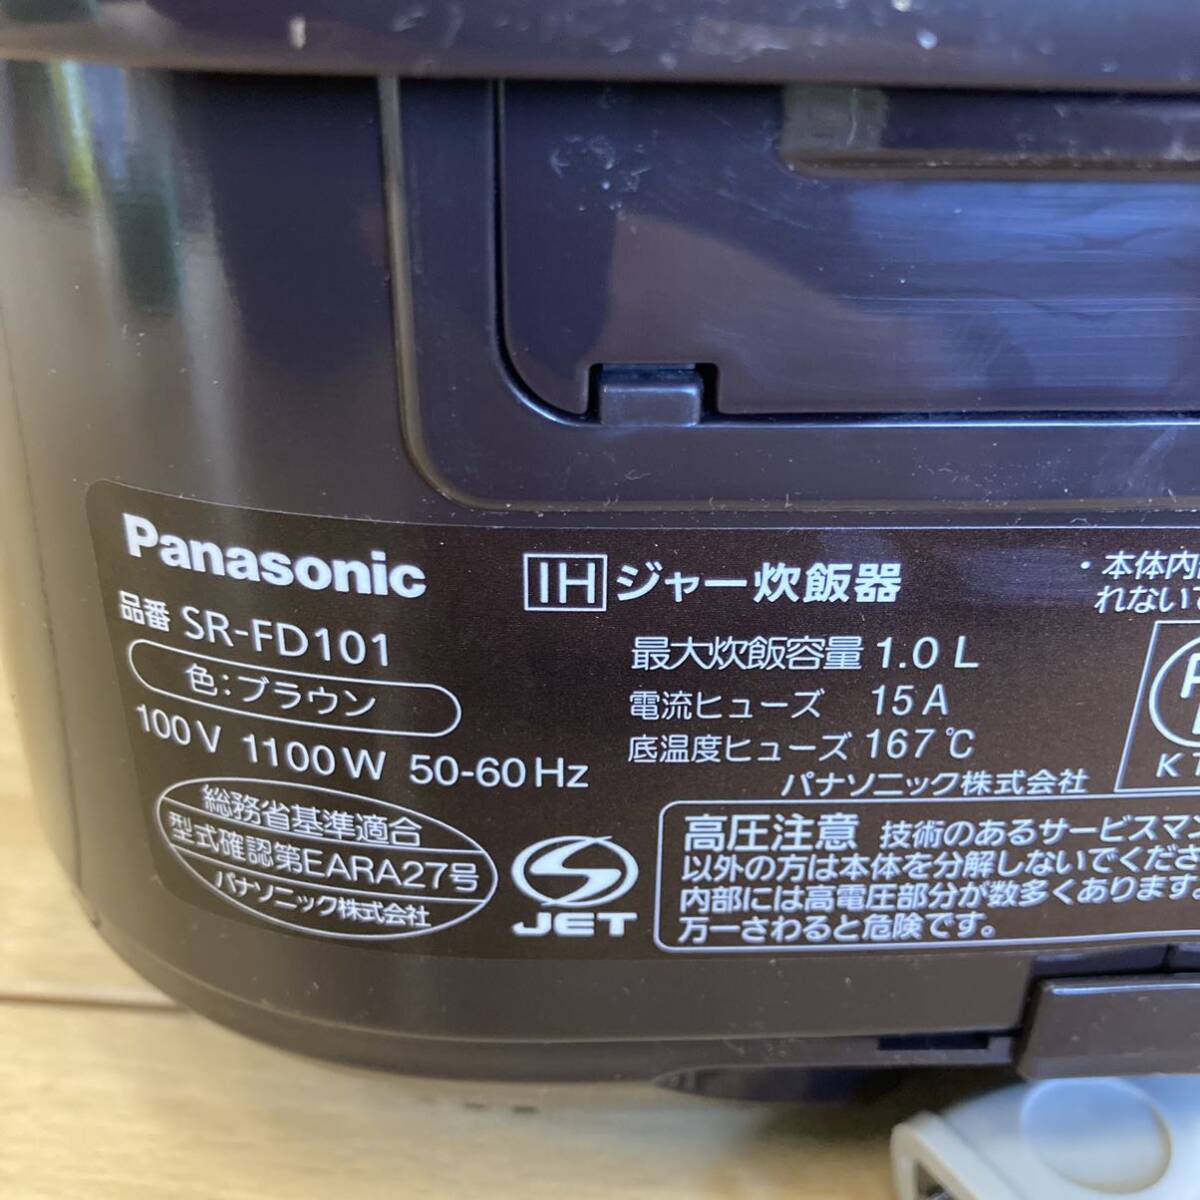  запад 542 Panasonic Panasonic IH рисоварка ..ja-5.5...SR-FD101 2023 год производства Brown рисоварка 